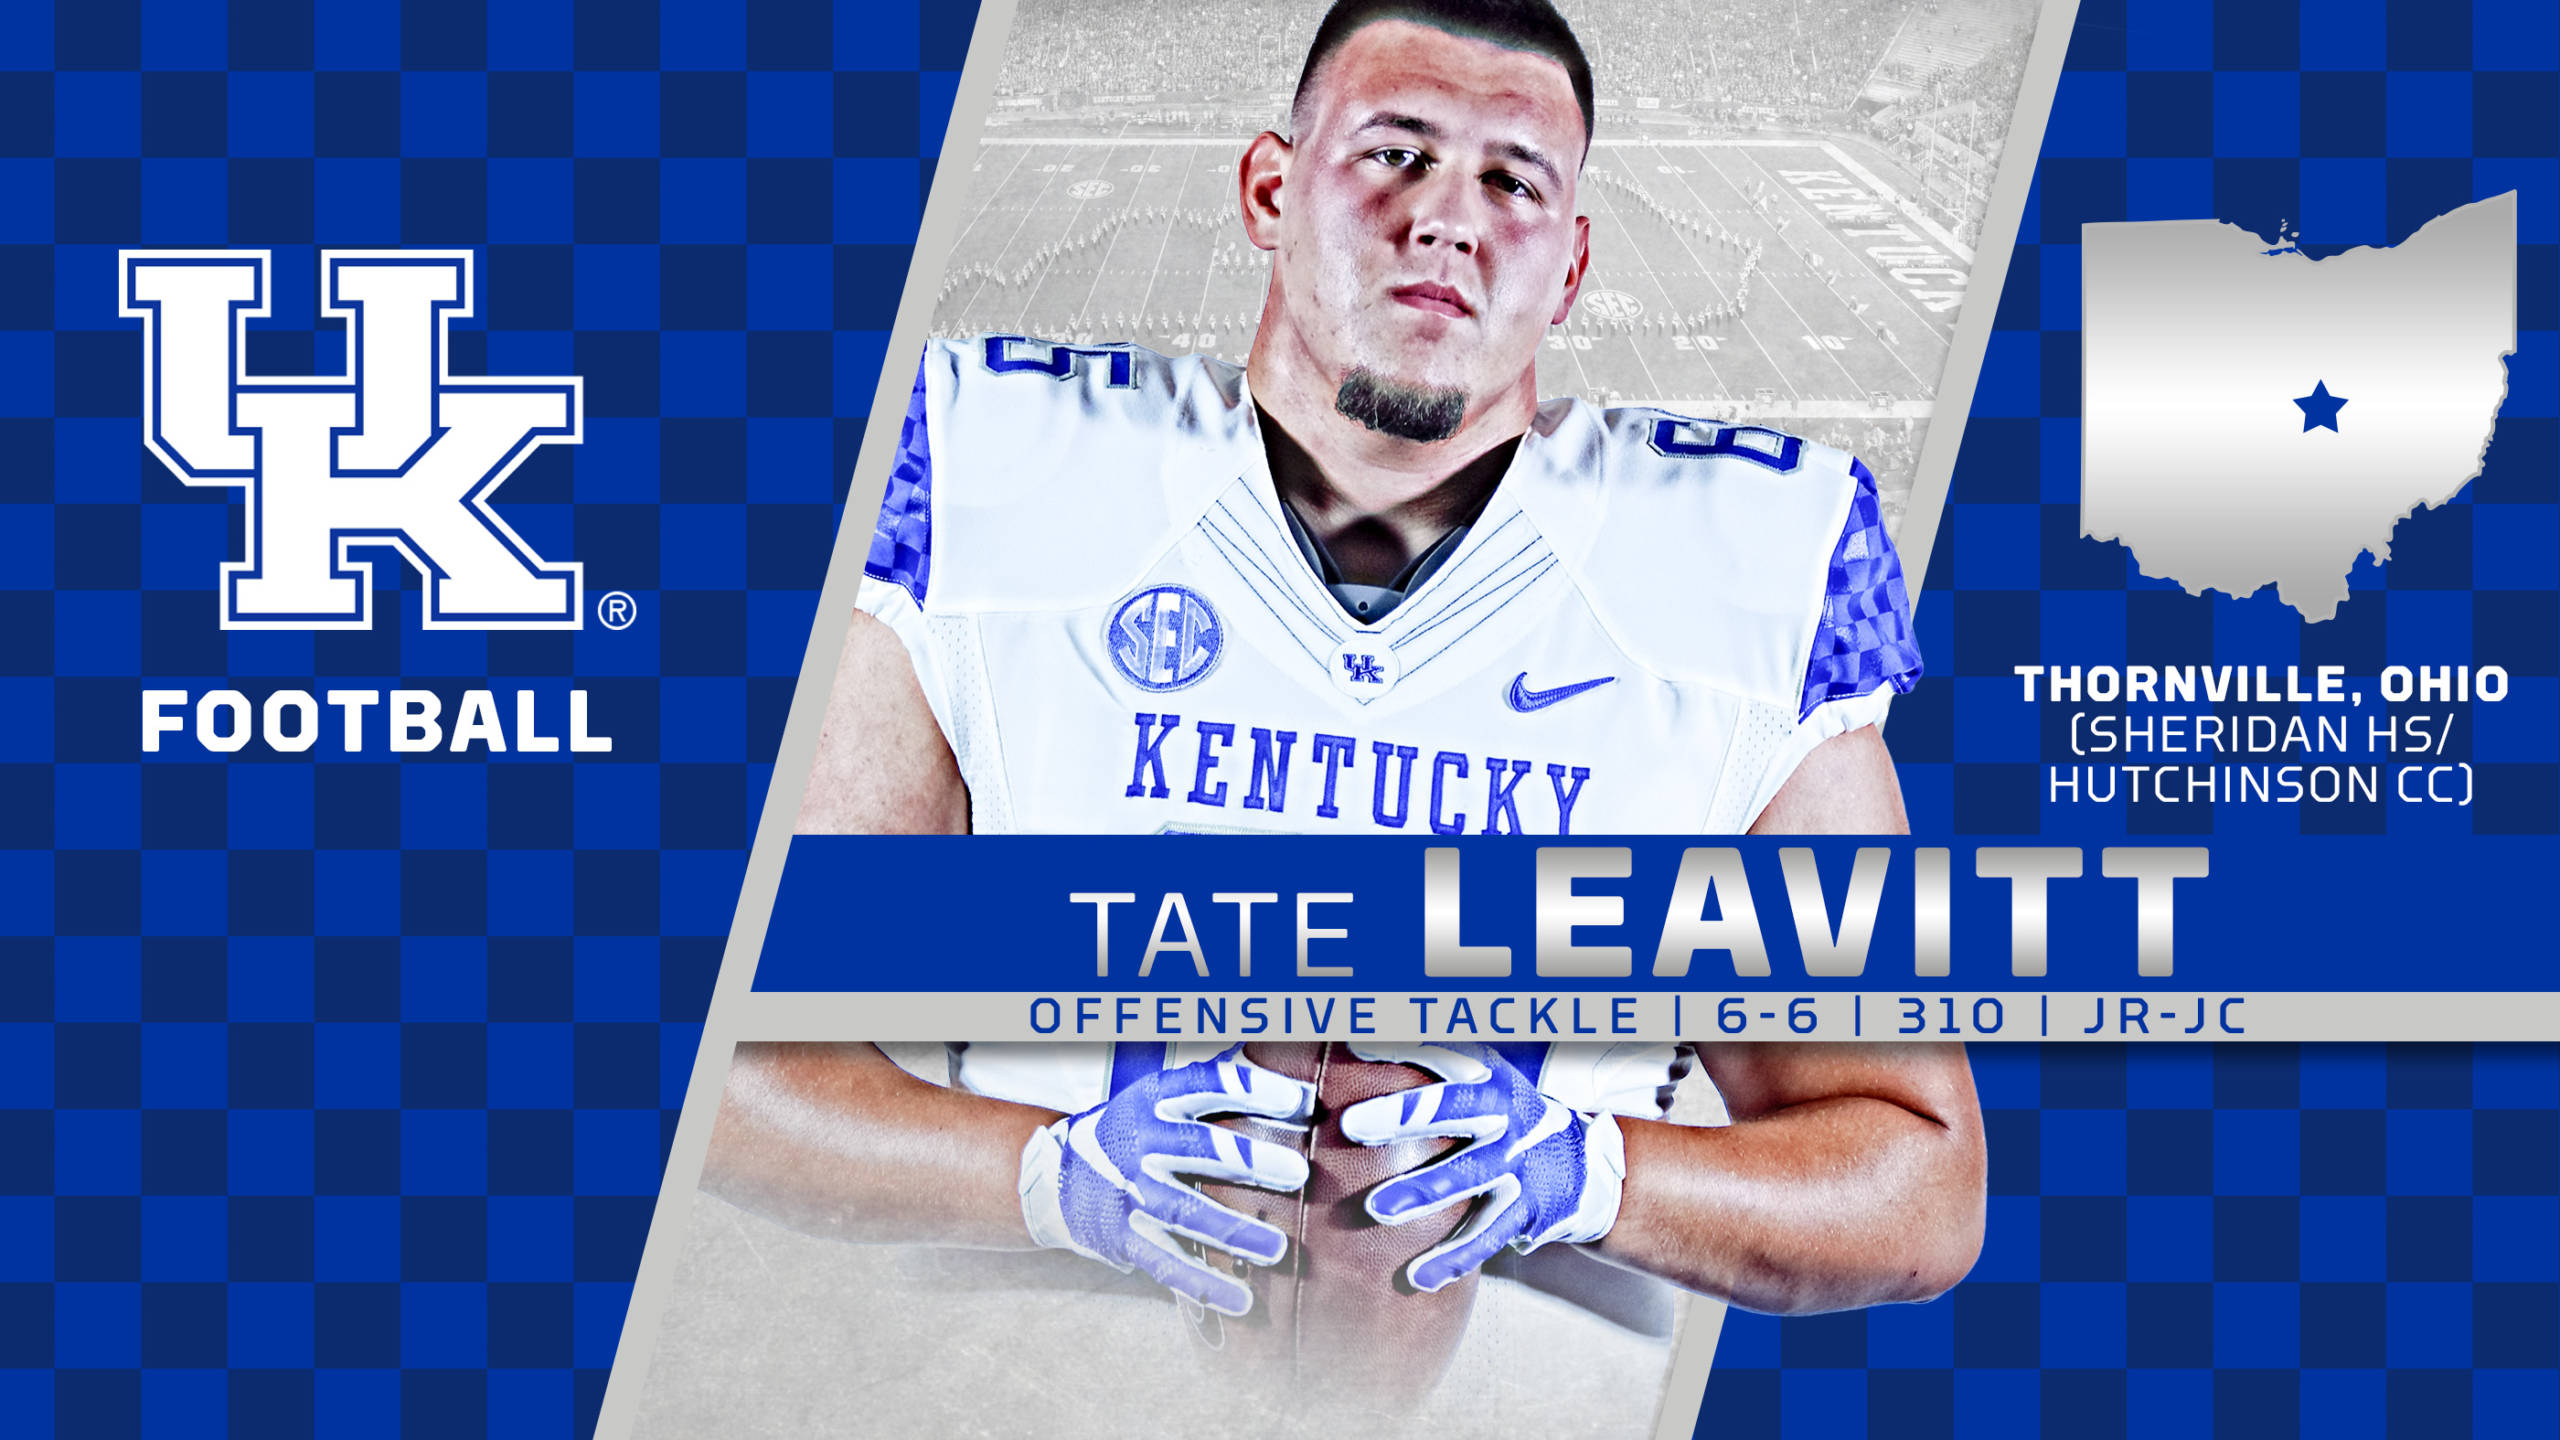 Tate Leavitt Signs with Kentucky Football